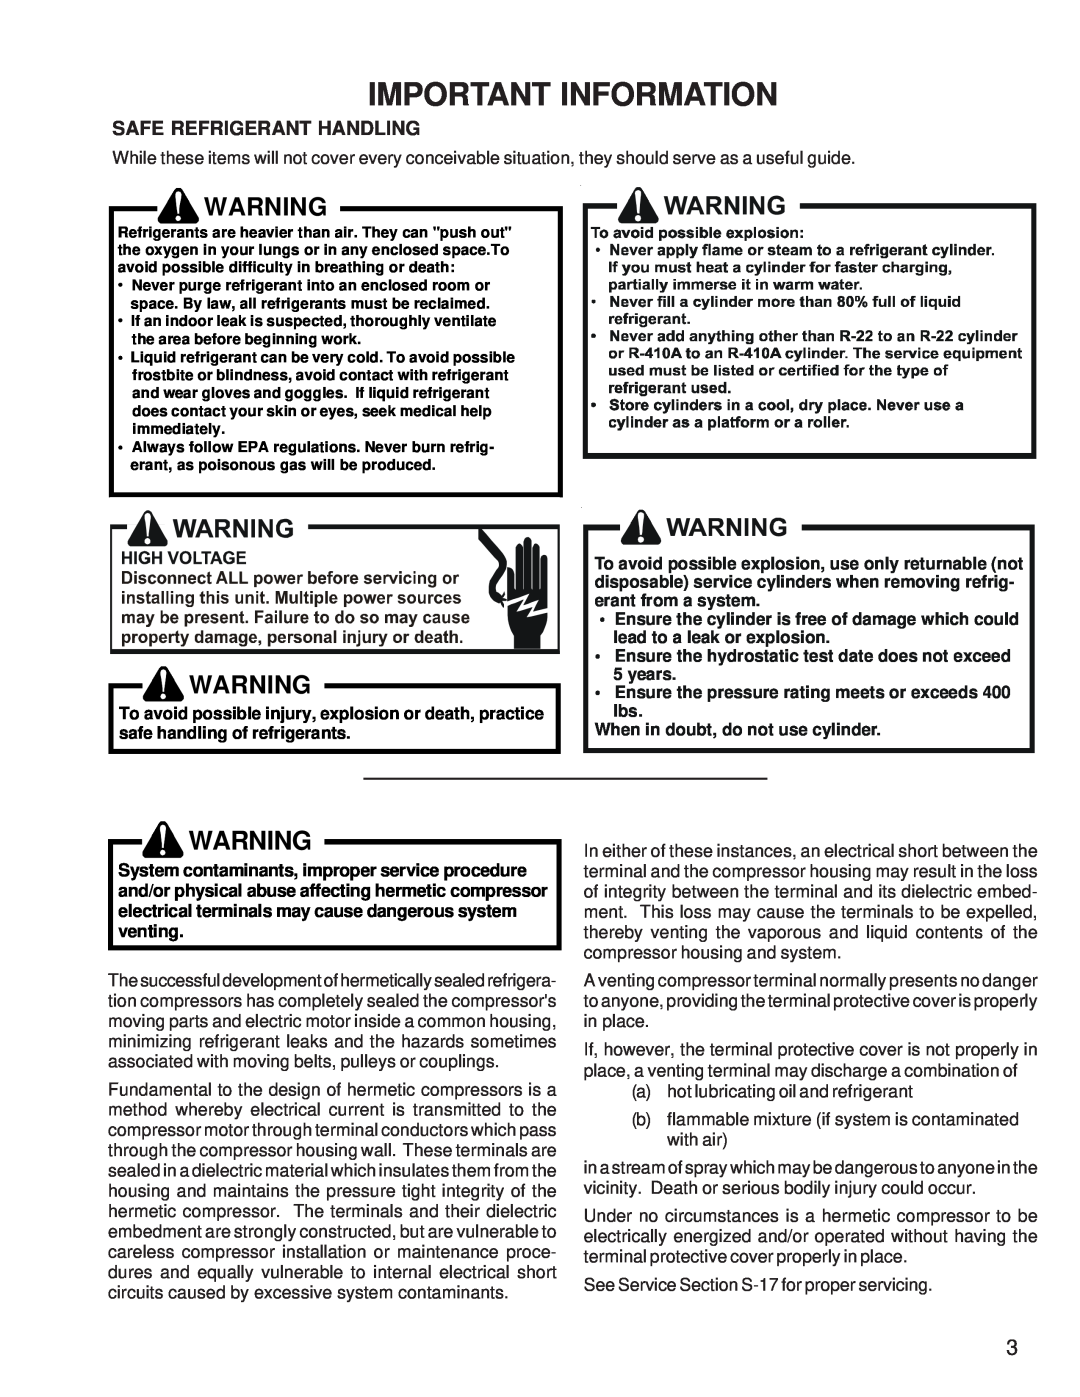 Goodman Mfg RT6100004R13 manual Safe Refrigerant Handling, Important Information 